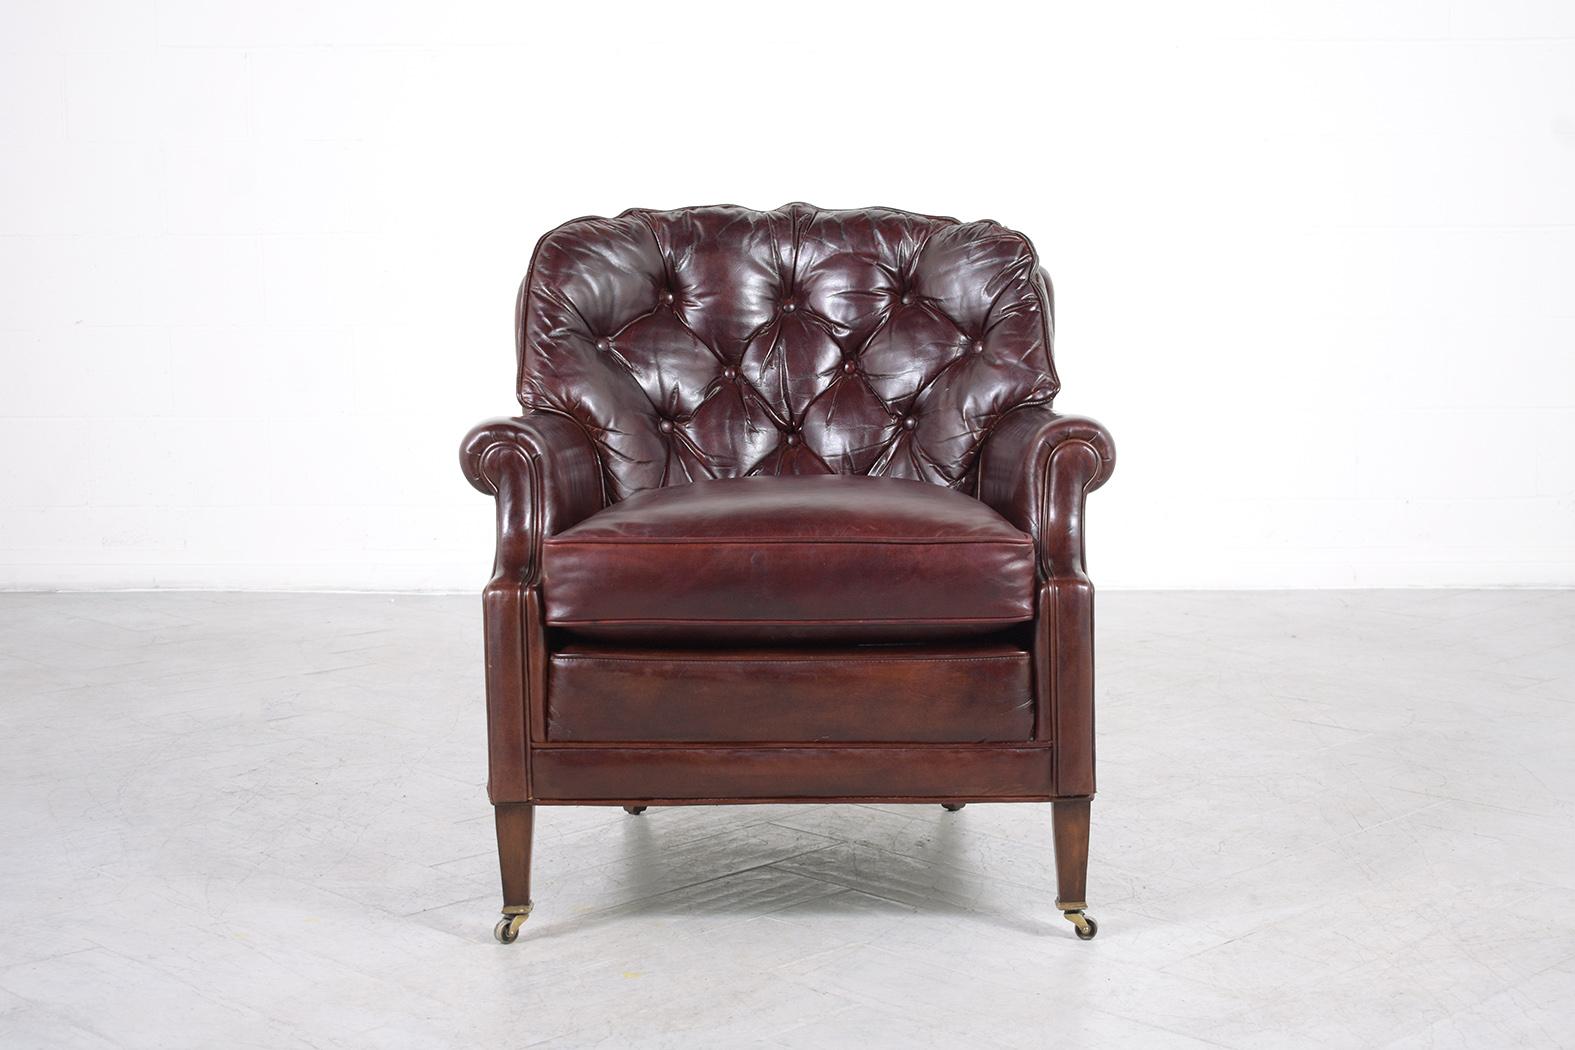 Voici notre extraordinaire chaise longue Chesterfield anglaise ancienne, restaurée de manière experte par notre équipe d'artisans professionnels. Ce superbe fauteuil, dont la structure est magnifiquement réalisée en bois et revêtue d'un cuir de